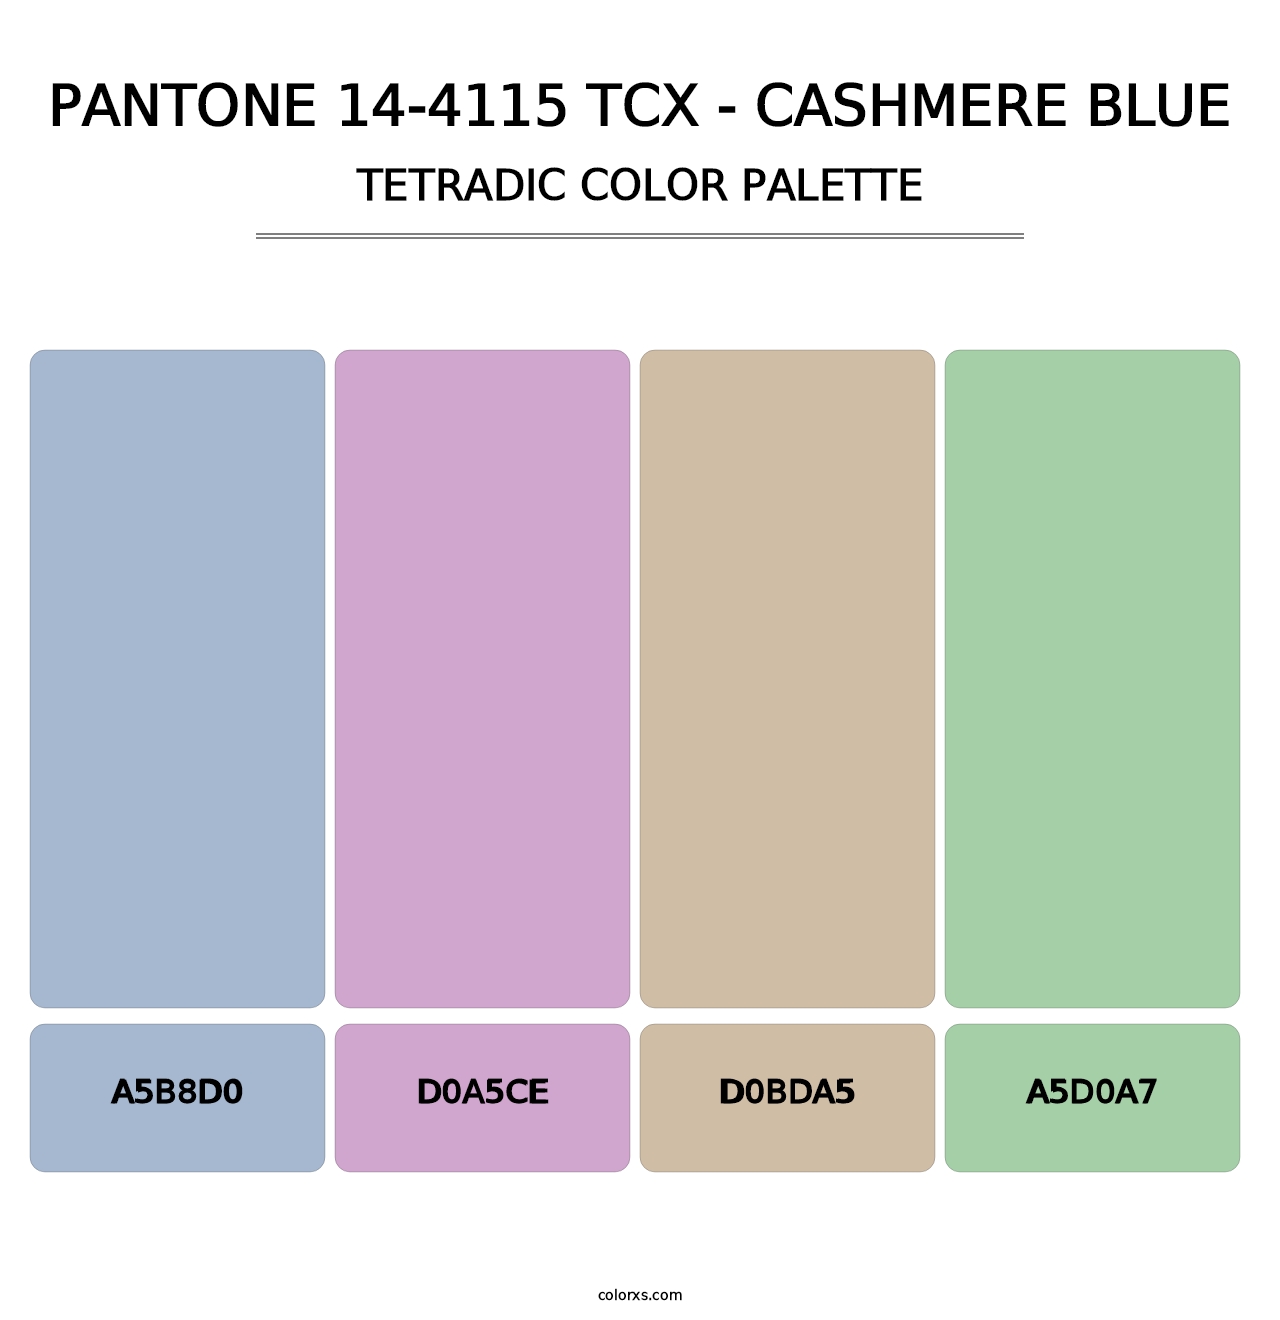 PANTONE 14-4115 TCX - Cashmere Blue - Tetradic Color Palette